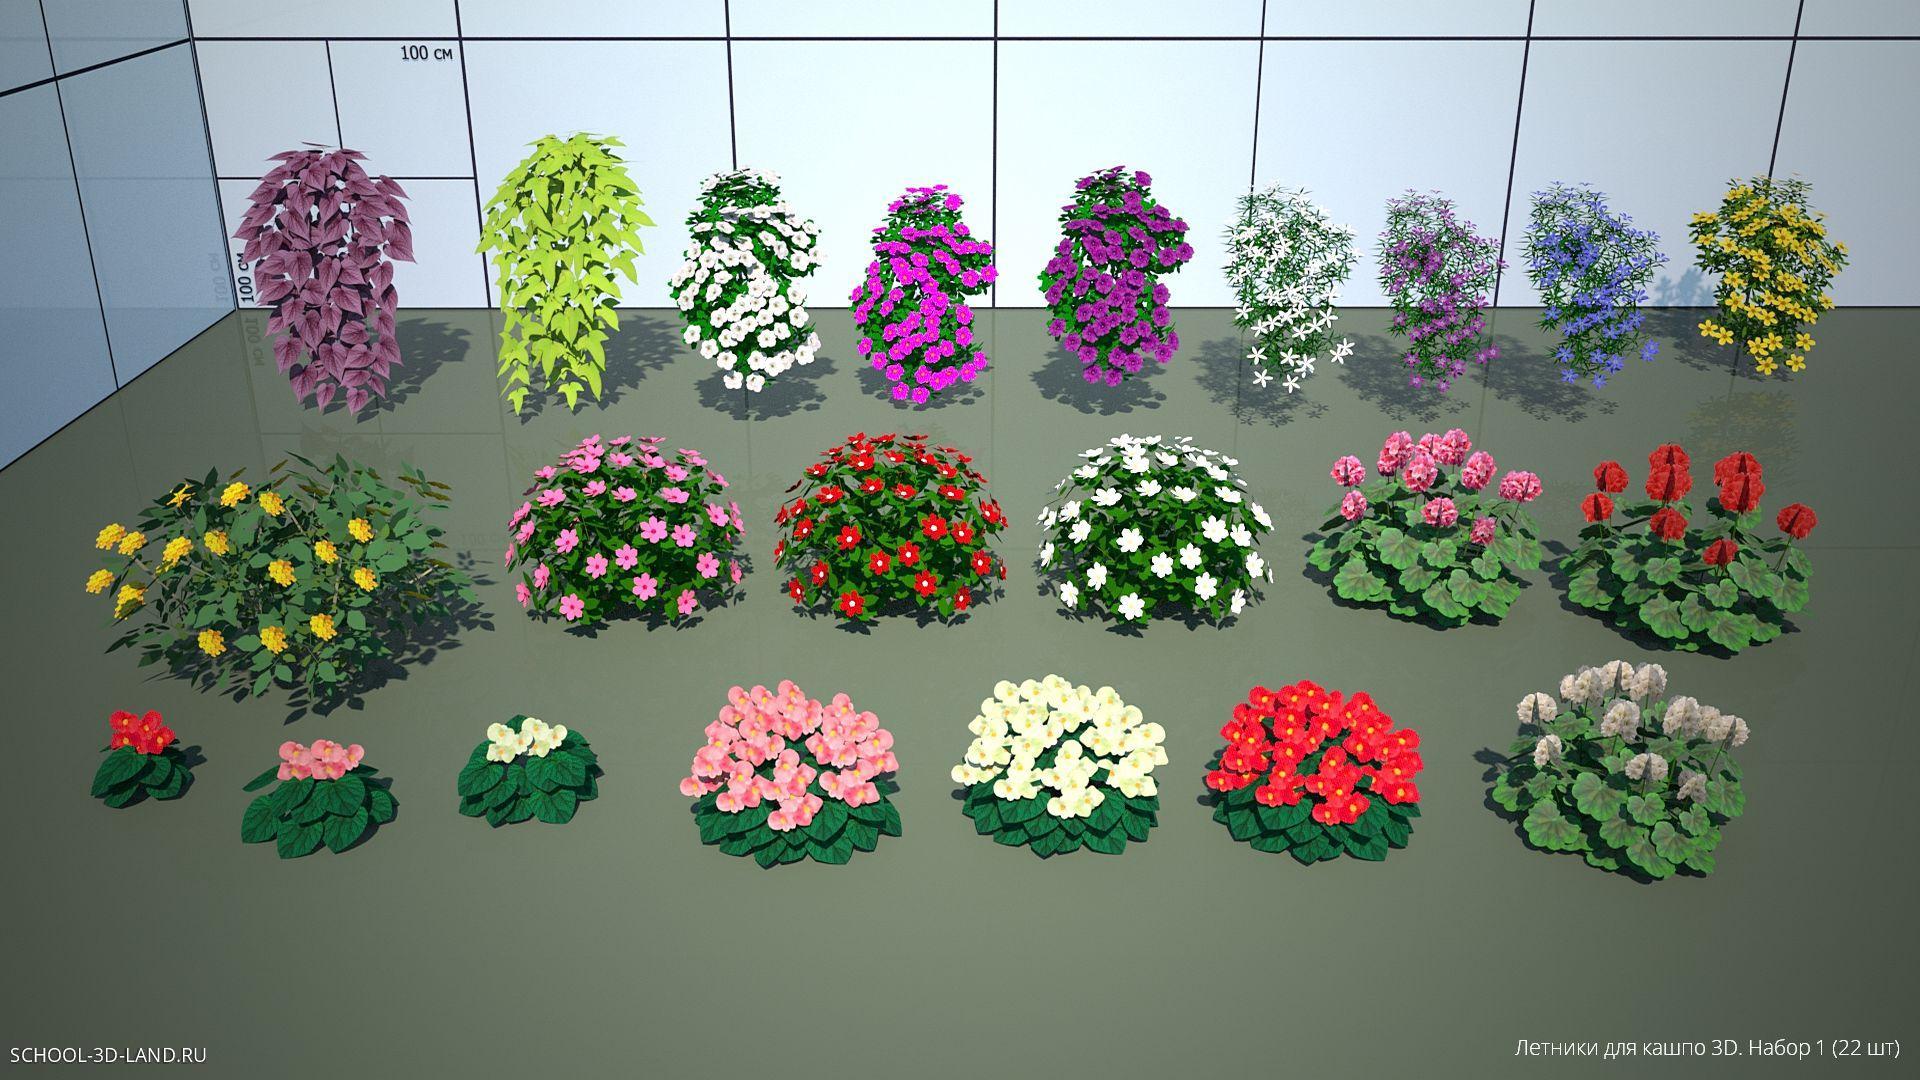 Letniki for planters 3D. Collection 1 (22pcs)